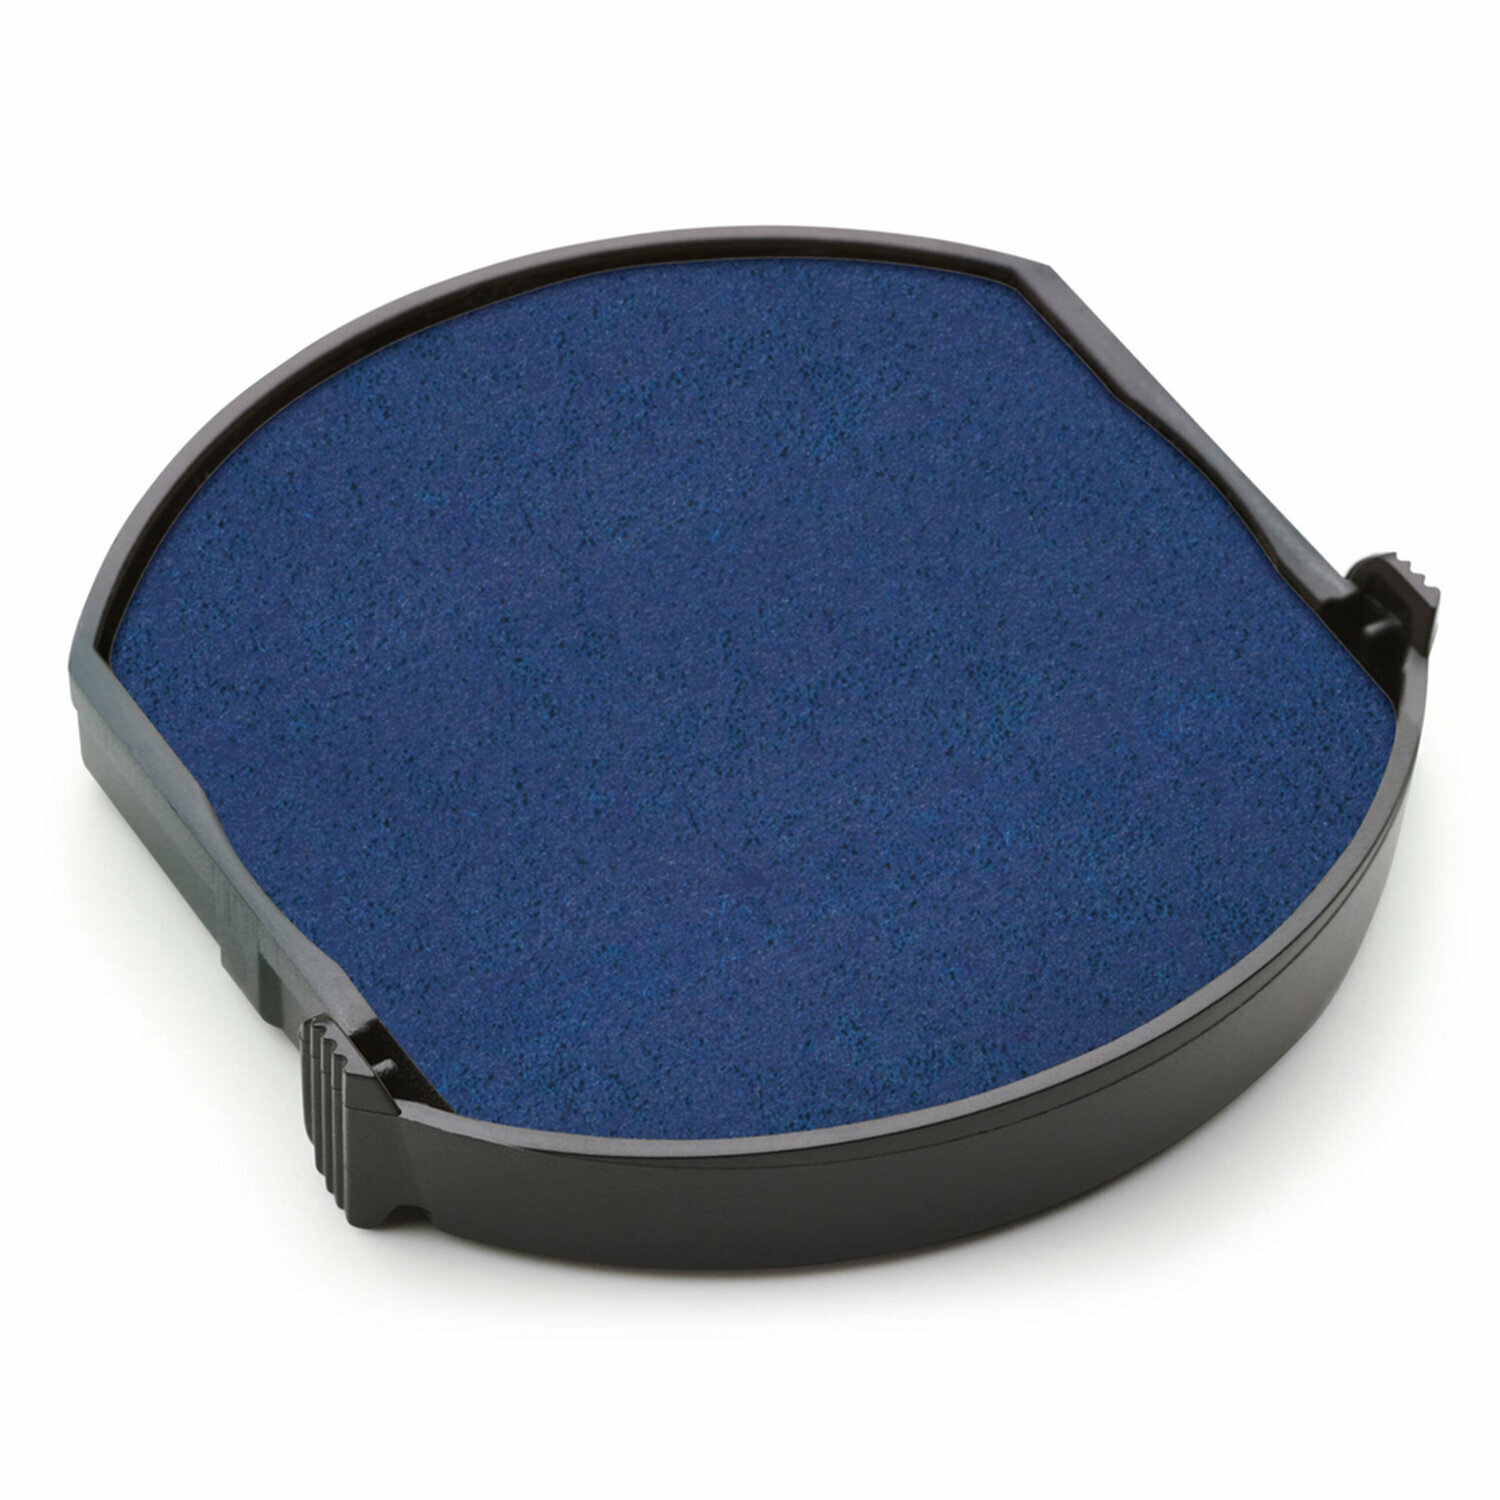 Подушка сменная для печатей диаметром 45 мм, синяя, для TRODAT 4645, арт. 6\ 4645153855, - Комплект 5 шт.(компл.)